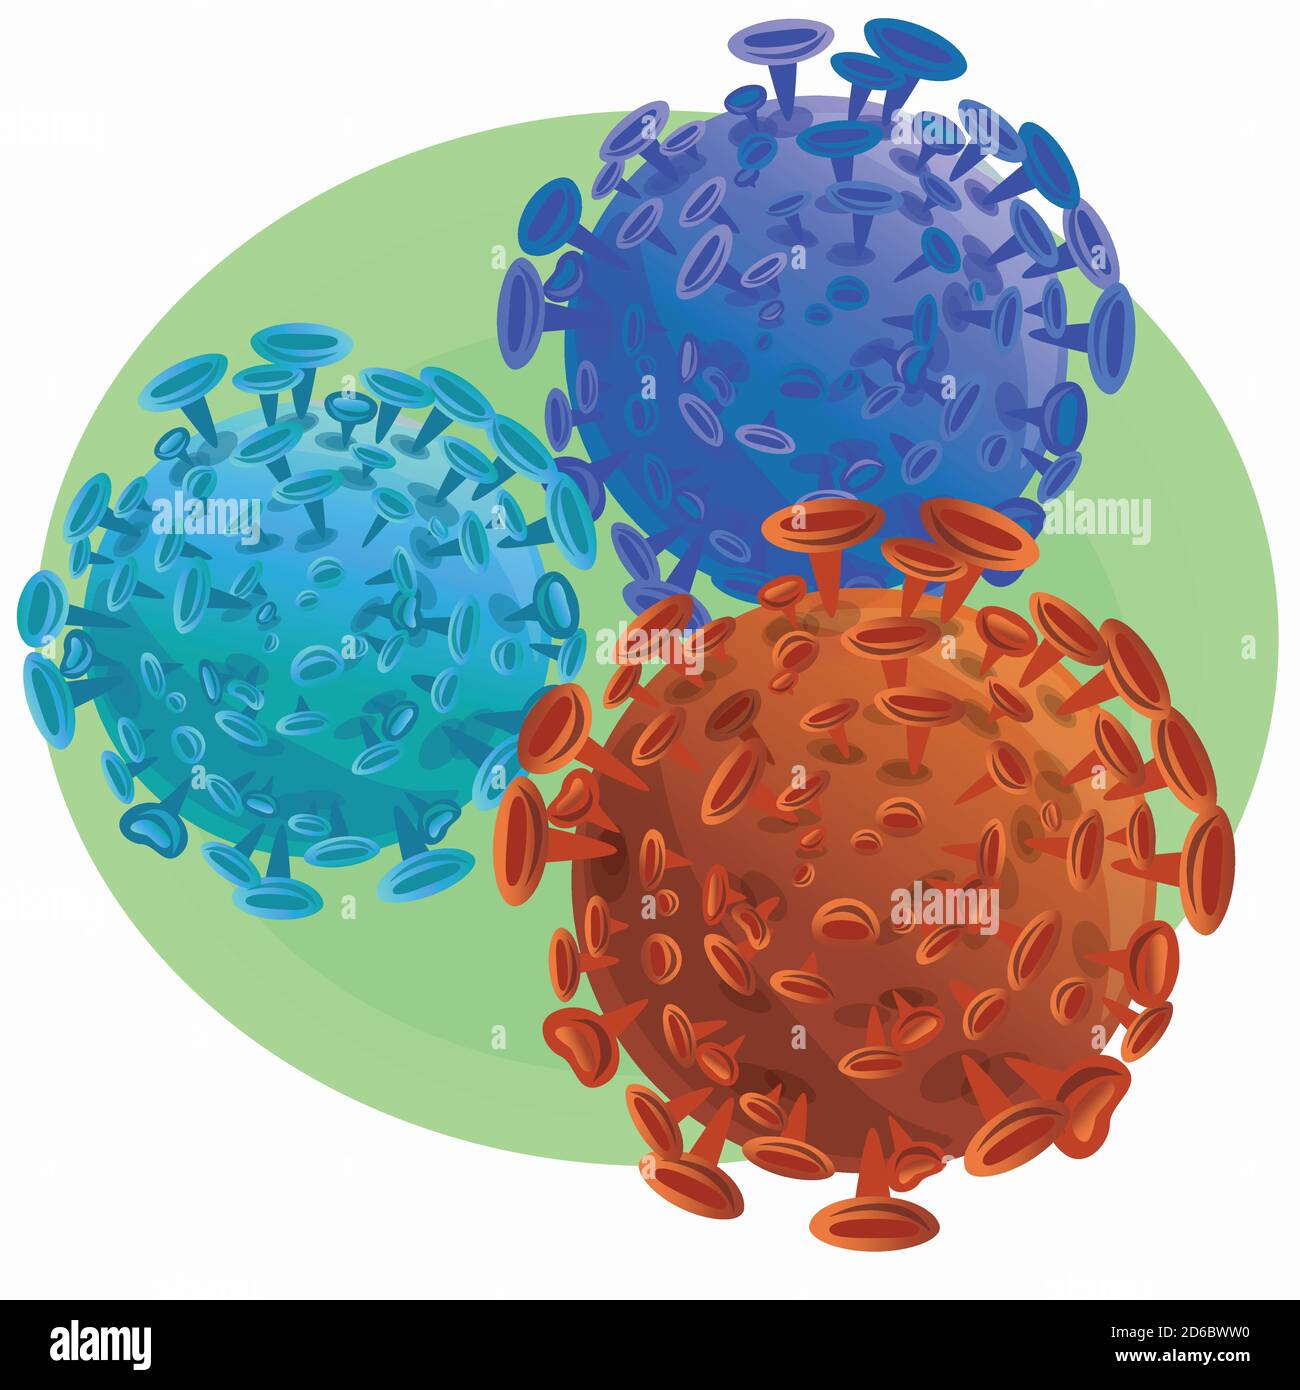 illustrazione di cellule microscopiche isolate arancio e blu di coronavirus - batteri SARS-COV-2 su sfondo verde Illustrazione Vettoriale